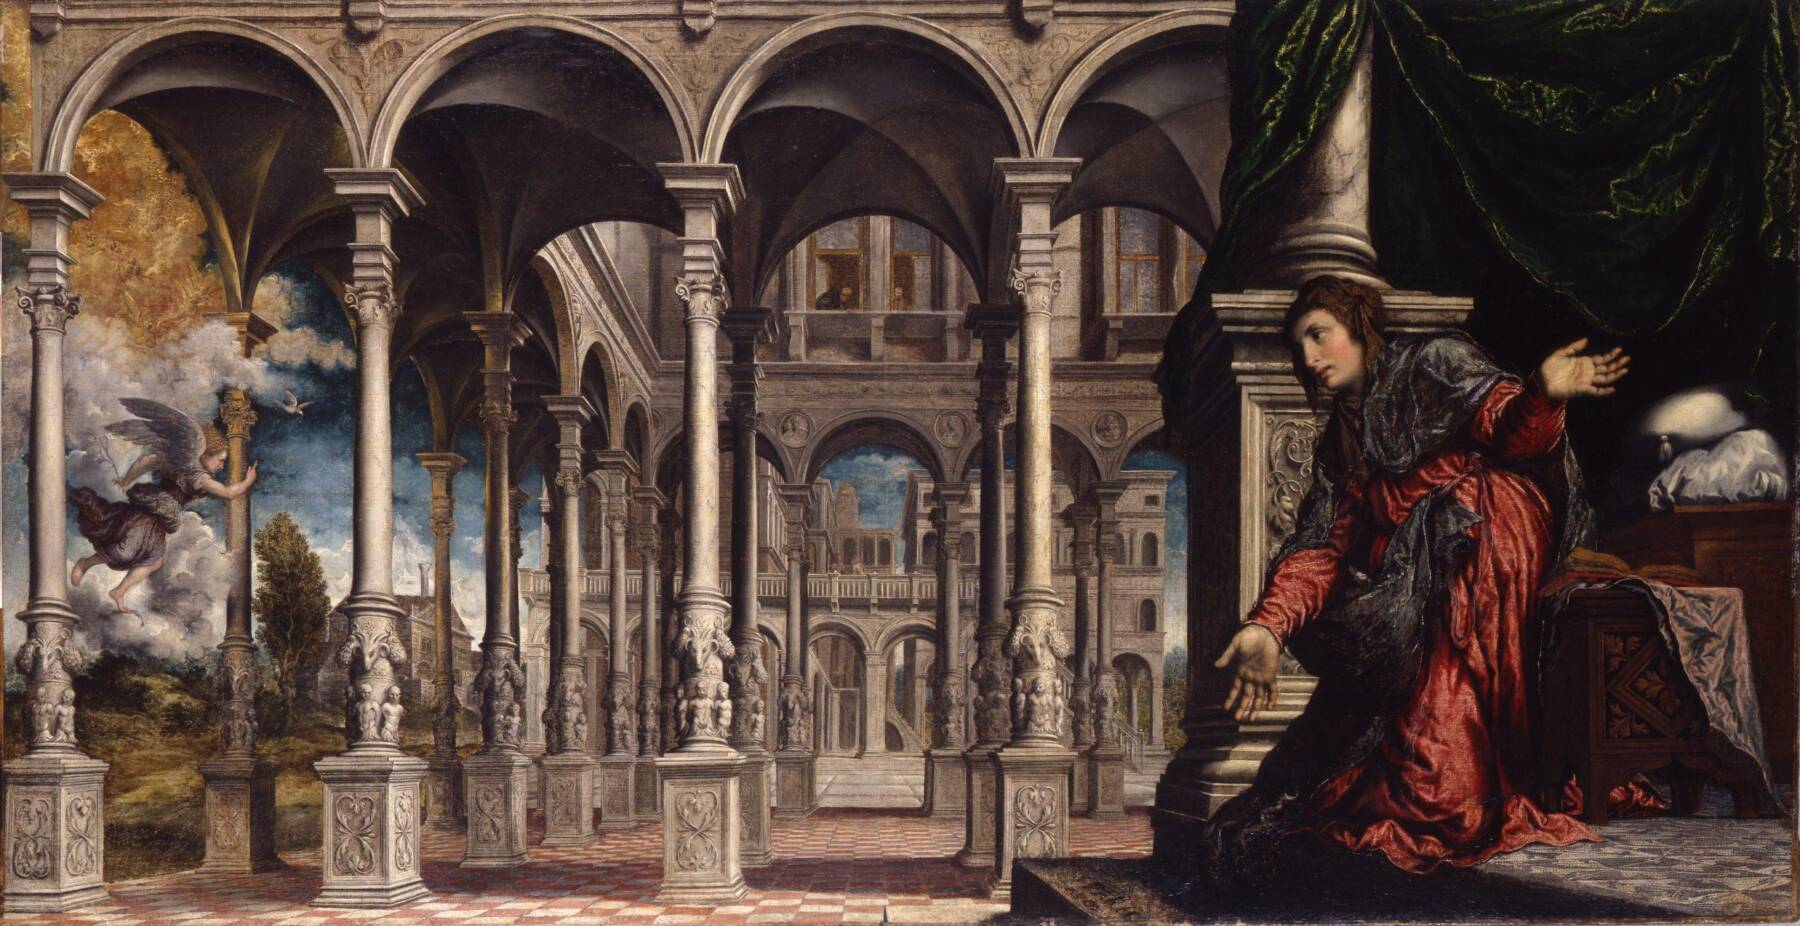 Il “Divin Pitor”. Paris Bordon 1500-1571 a Treviso